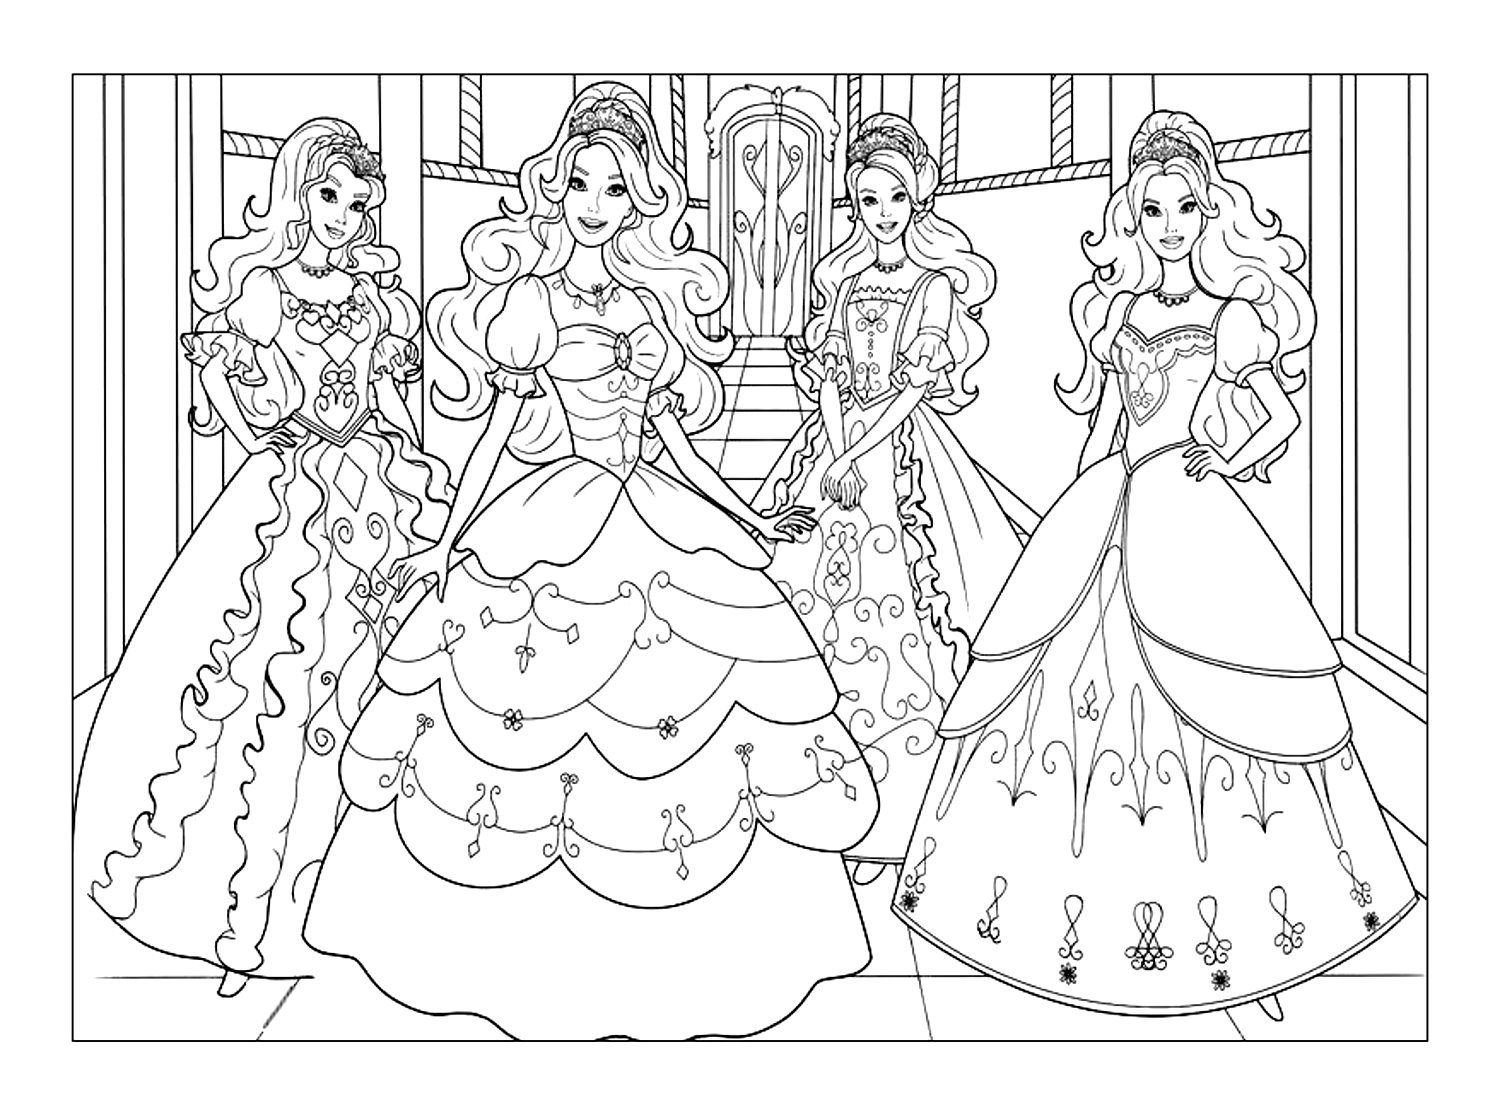 Princesas Barbie bonitas. Quatro princesas Barbie com vestidos lindíssimos. Um esquema de cores intrincado que certamente a levará de volta à infância.